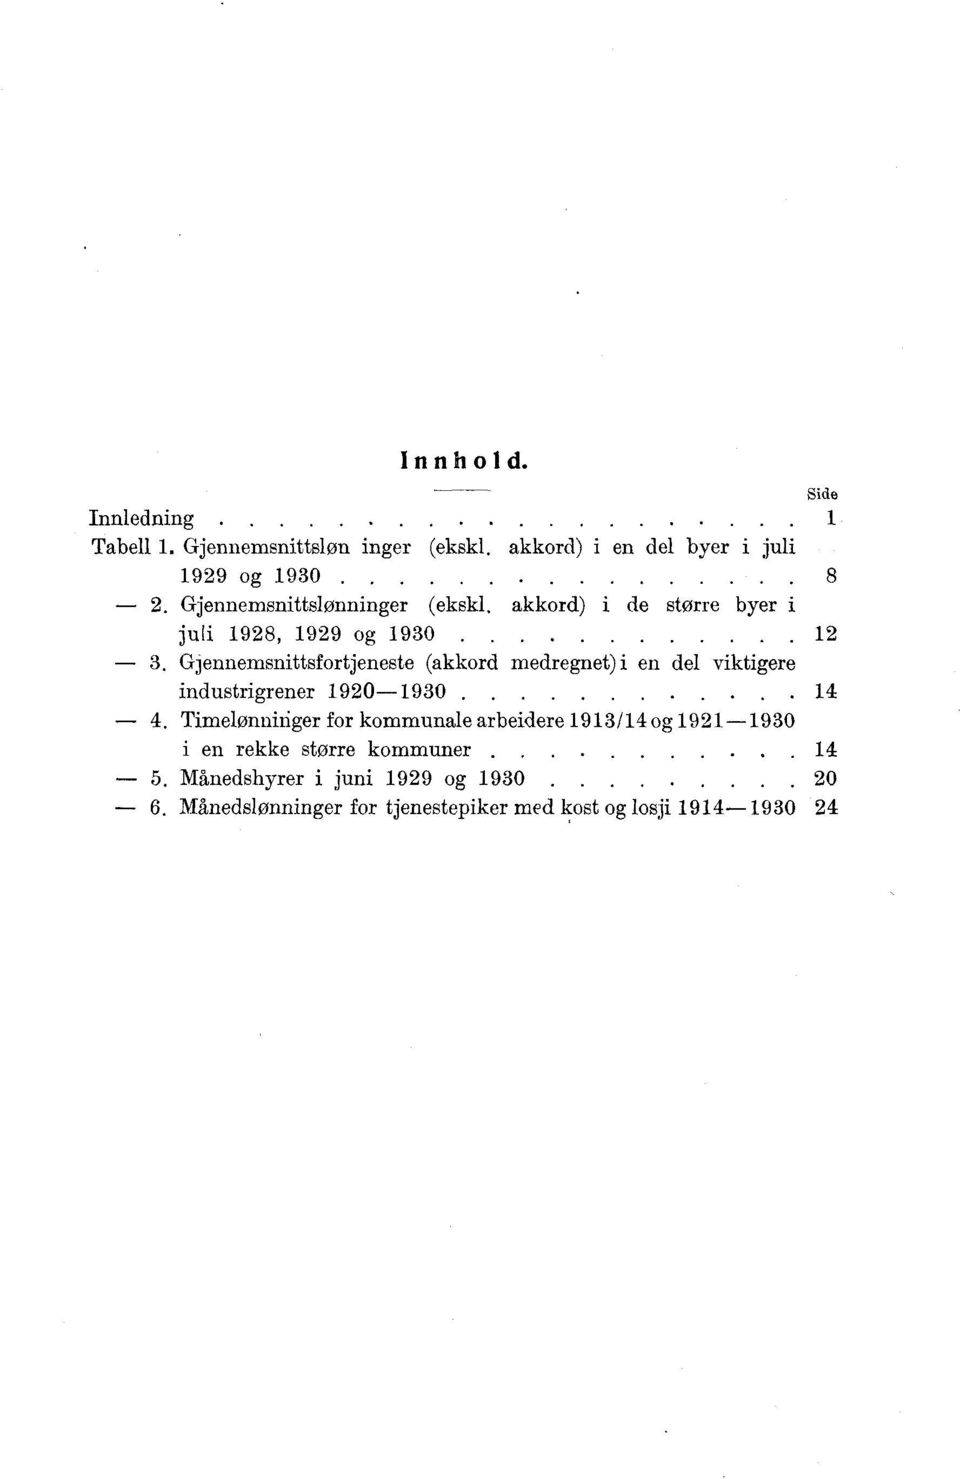 Gjennemsnittsfortjeneste (akkord medregnet) i en del viktigere industrigrener 1920-1930.. 14 4.